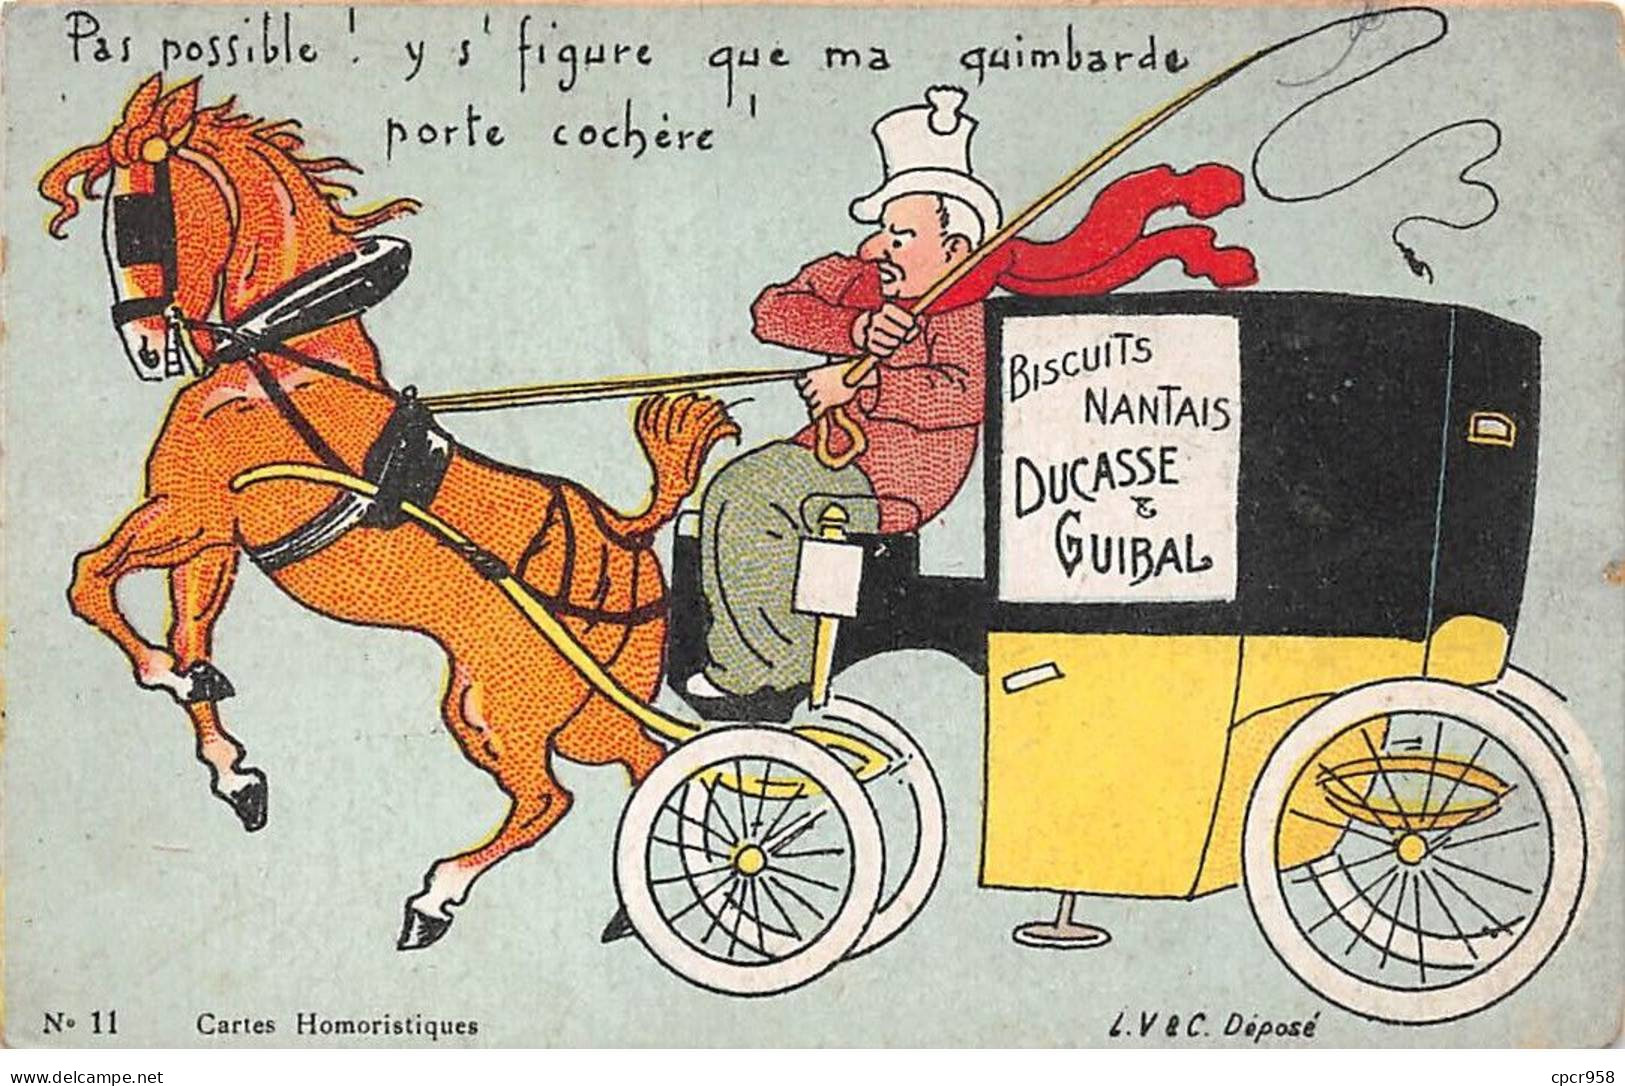 Publicité - N°85233 - Biscuits Nantais Ducasse & Guibal - N°11, Cartes Humoristiques - Publicité